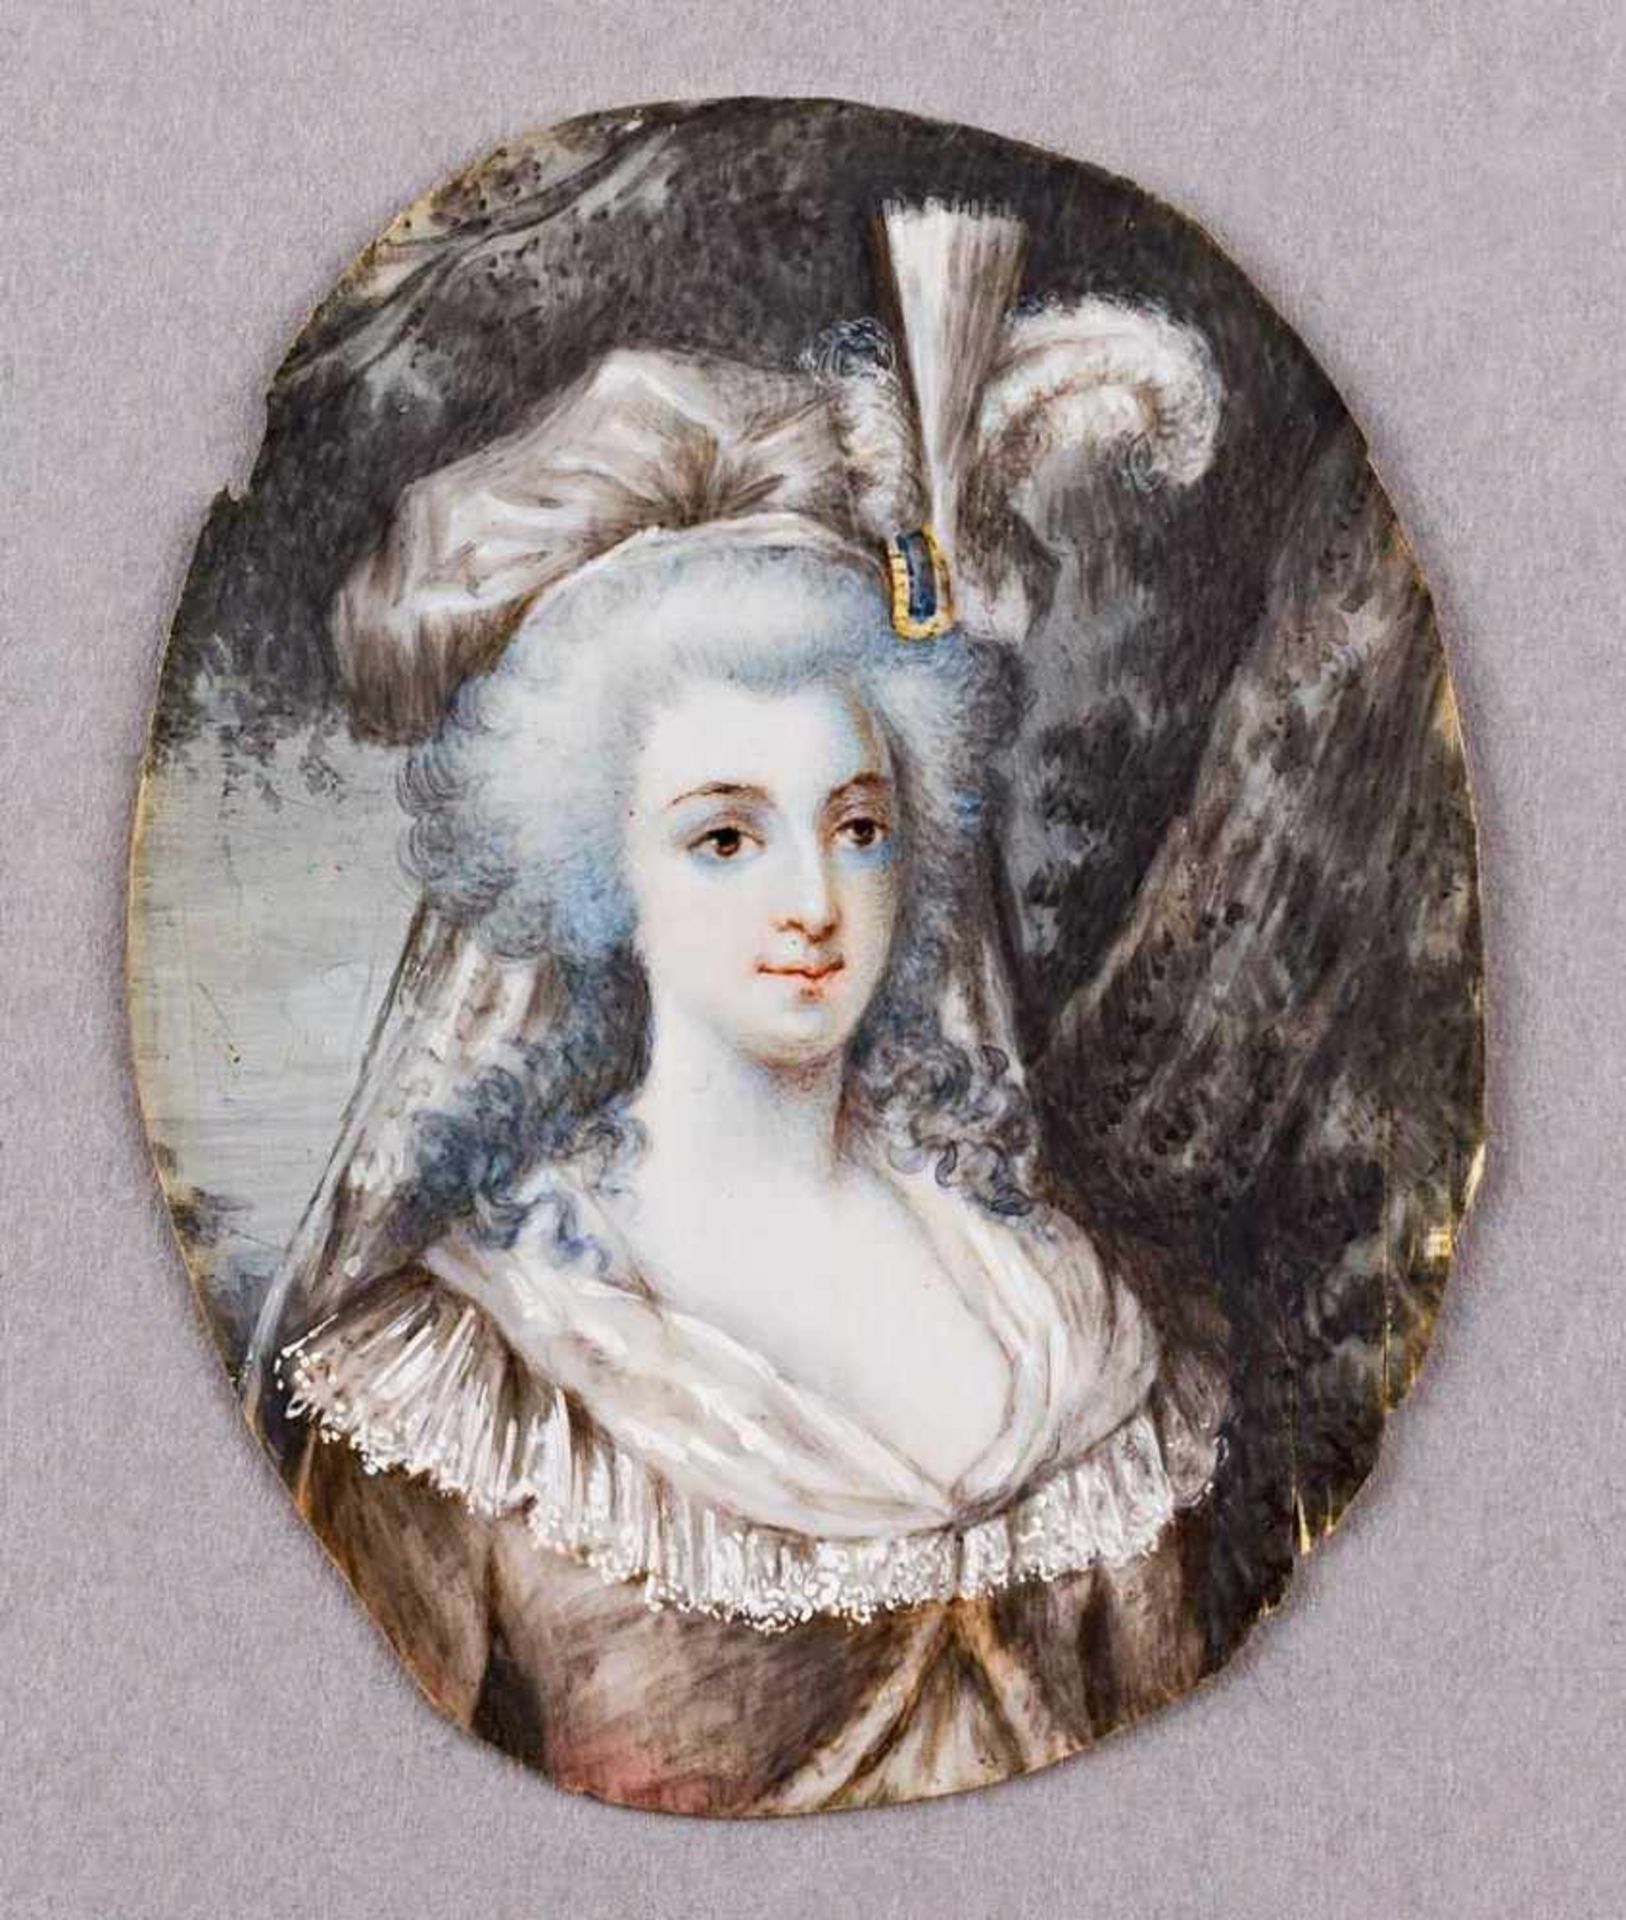 Portrait einer eleganten Dame, nach Gainsborough. Auf Elfenbein. 19. Jh. Oval, 6,5 x 5 cm. R